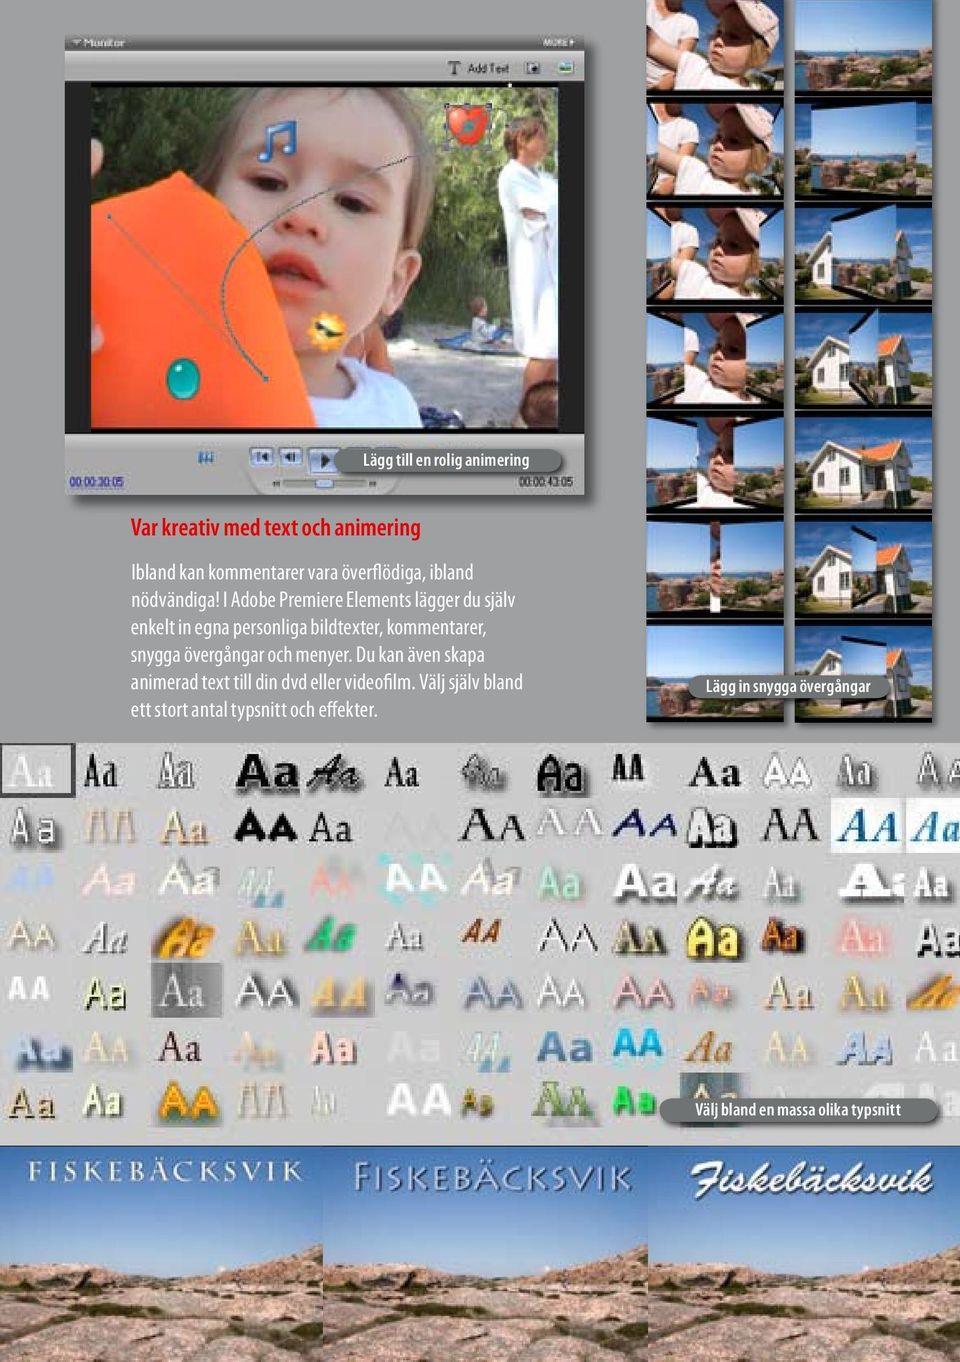 I Adobe Premiere Elements lägger du själv enkelt in egna personliga bildtexter, kommentarer, snygga